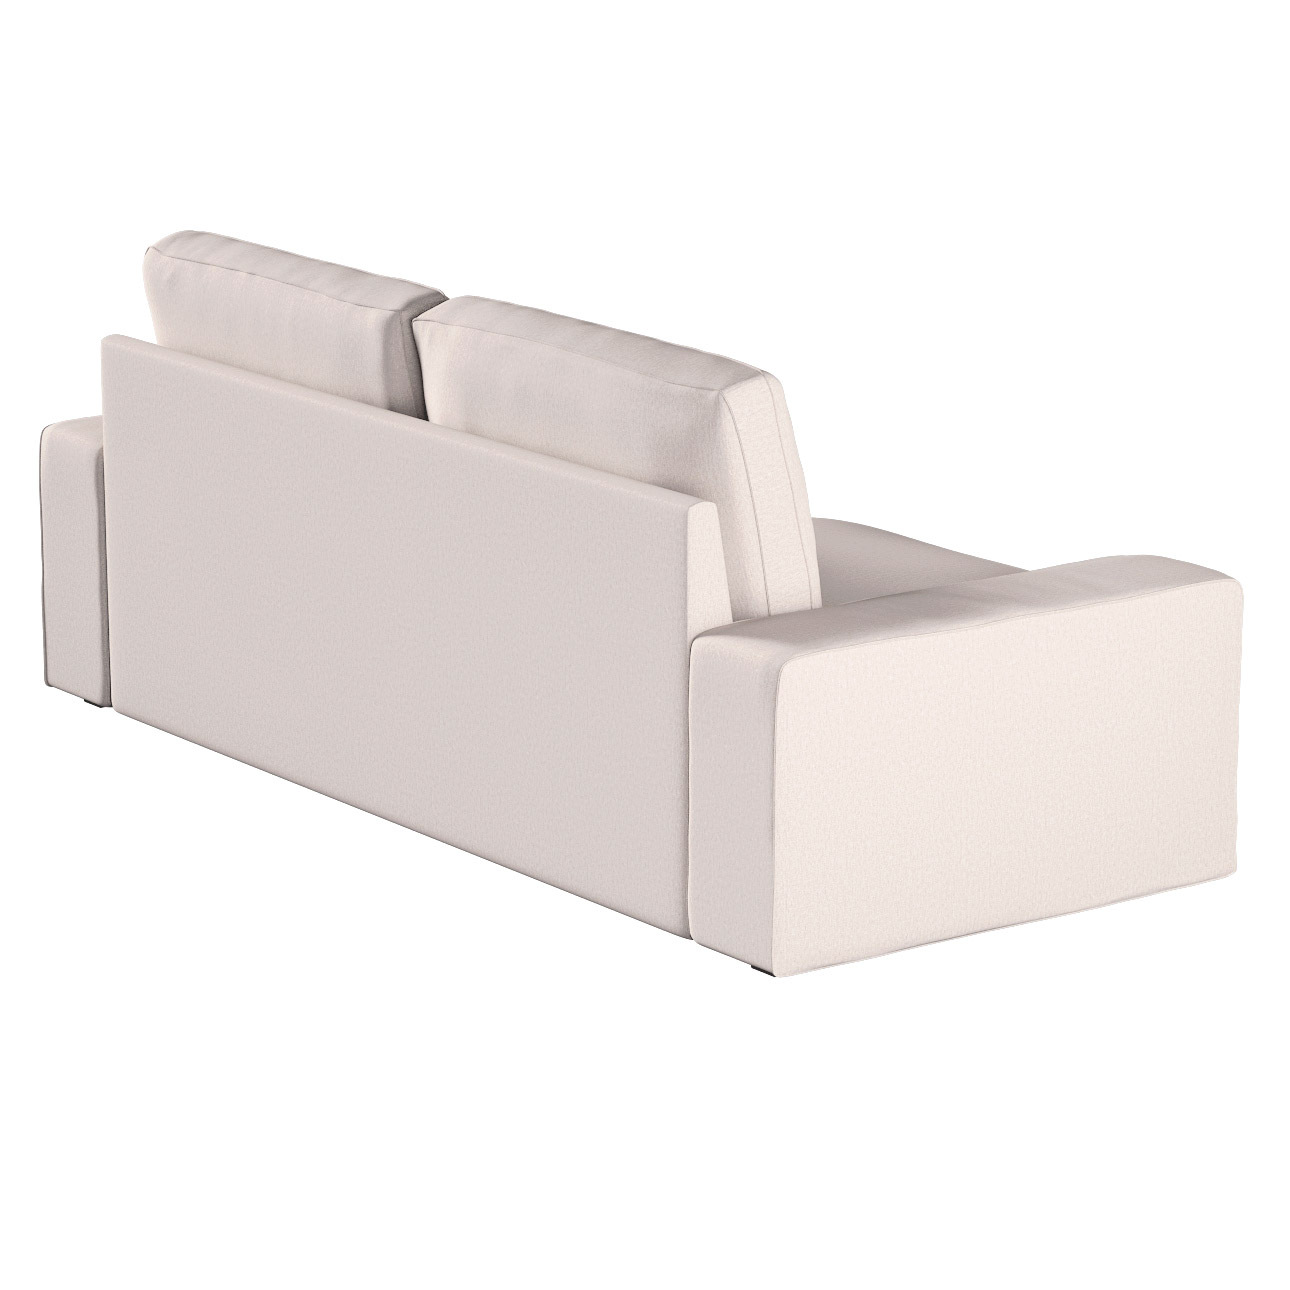 Bezug für Kivik 3-Sitzer Sofa, hellbeige, Bezug für Sofa Kivik 3-Sitzer, Ma günstig online kaufen